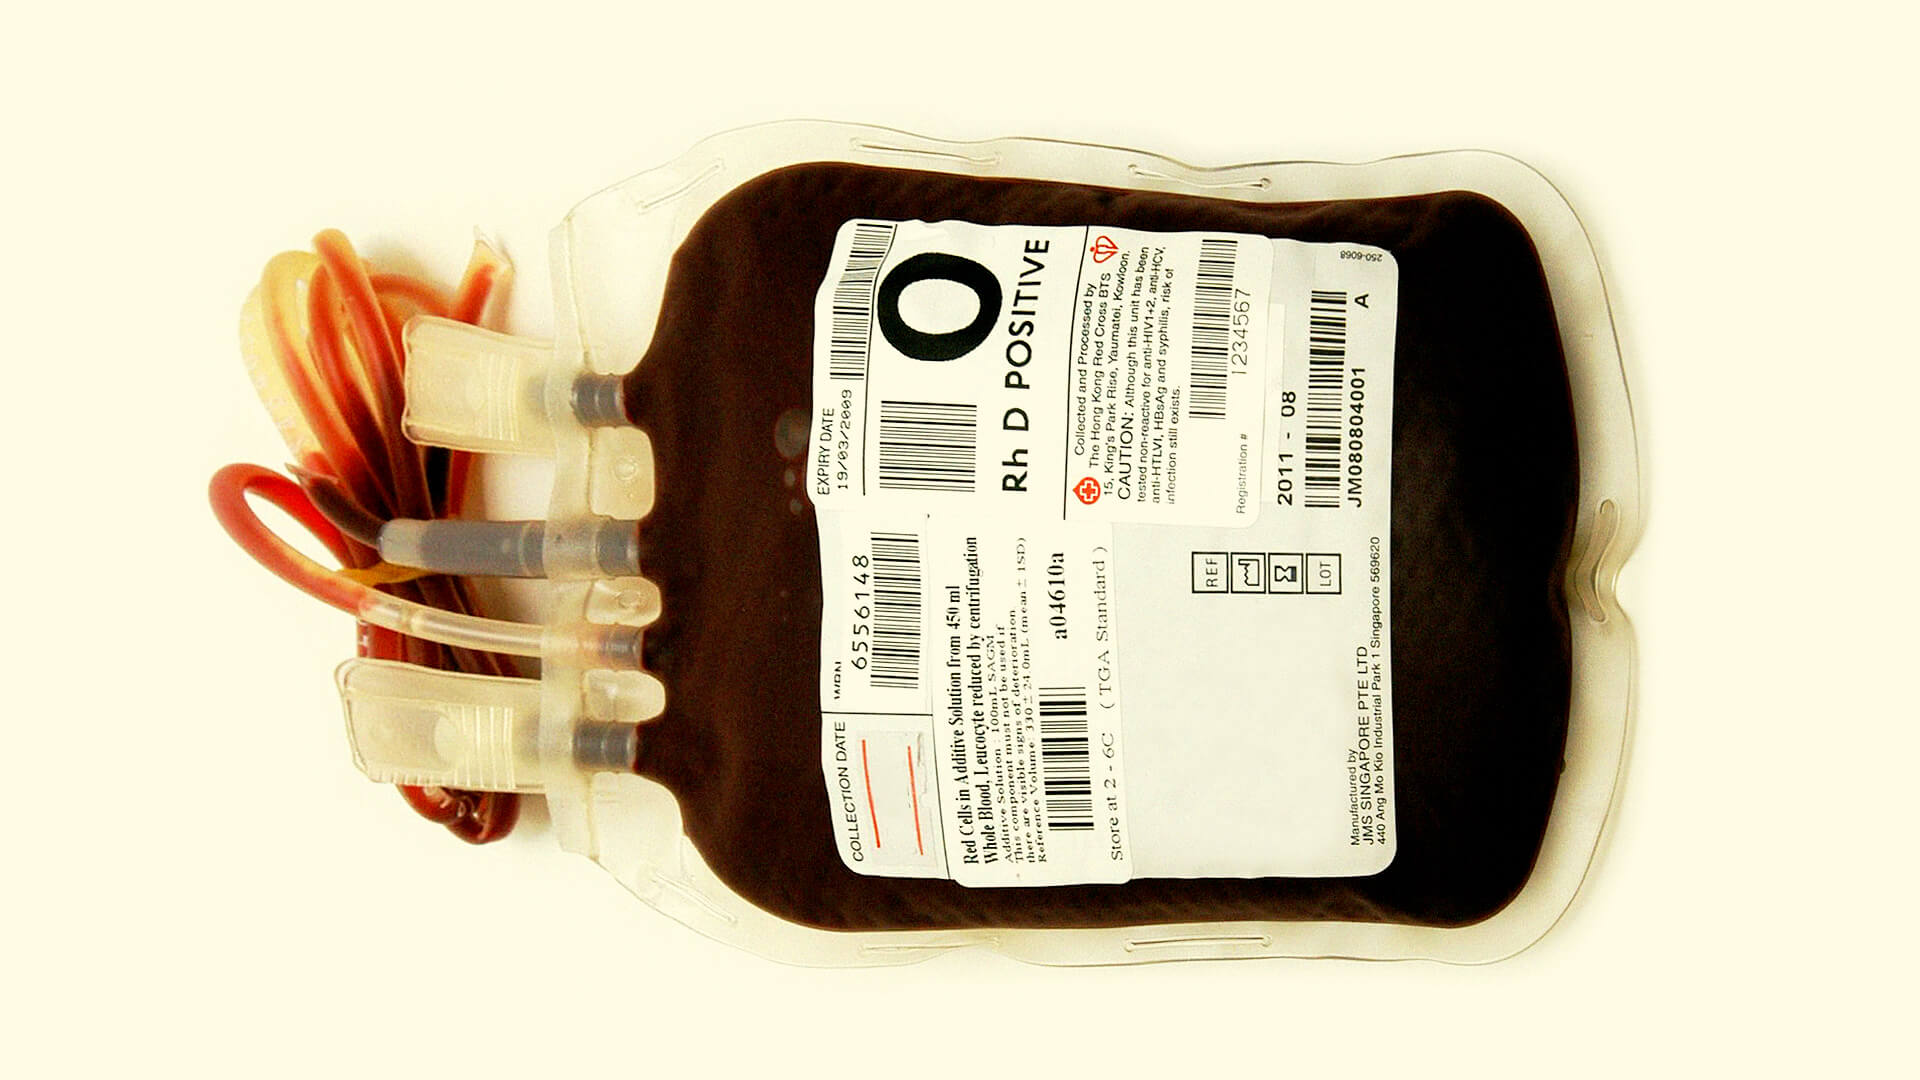 Bluttransfusionsbeutel als Symbolbild für Job-Angebote